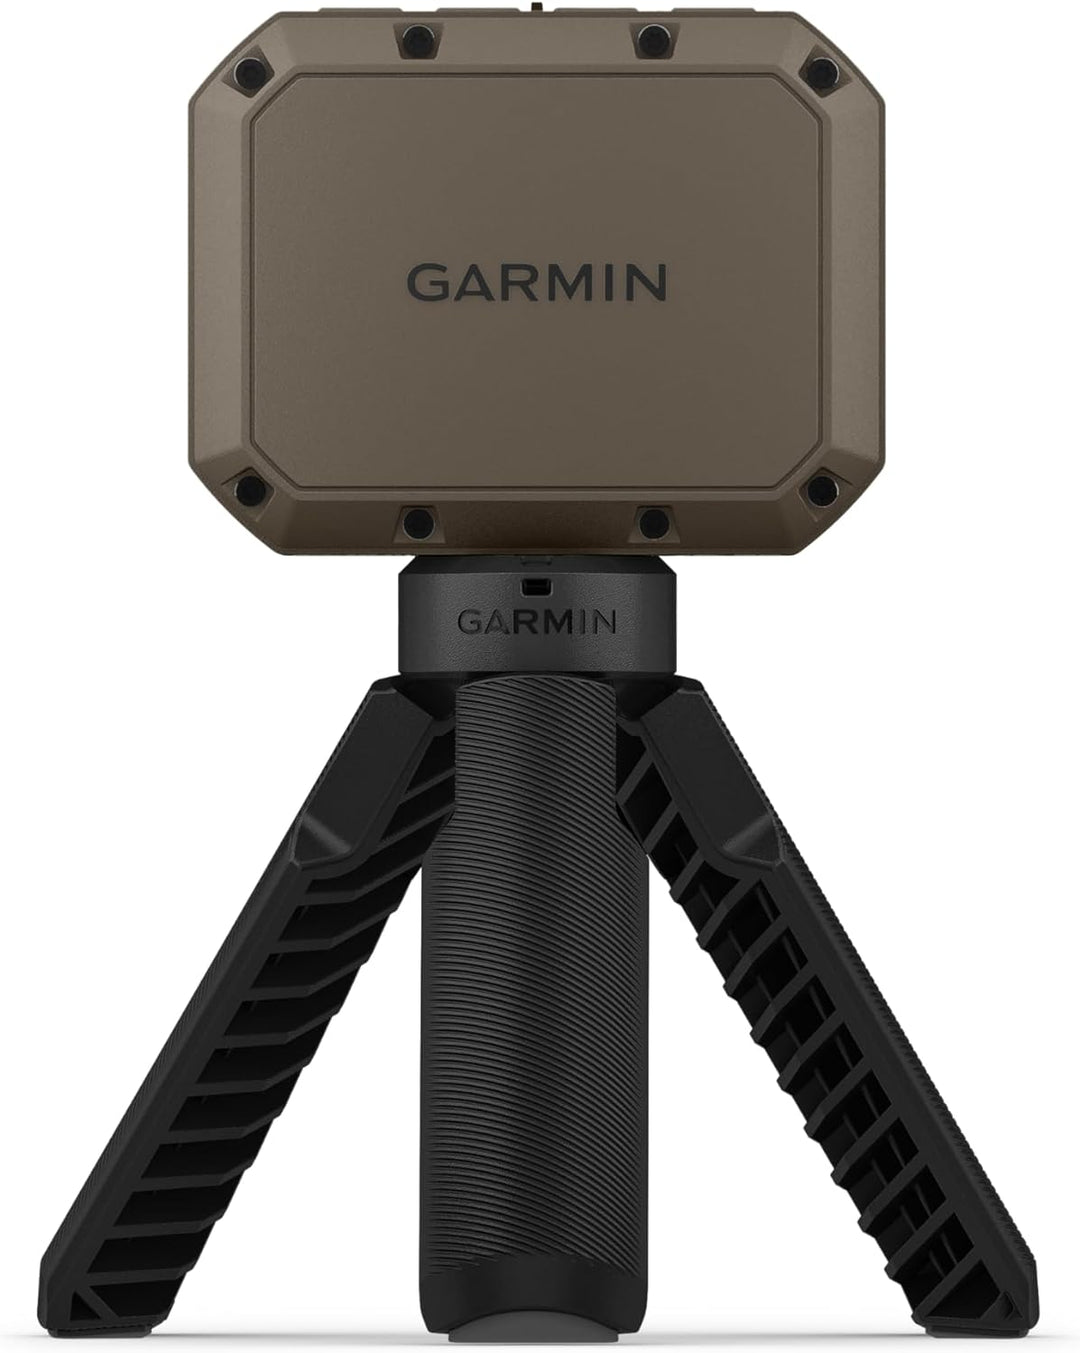 Garmin-Xero C1 Pro Compact Chronograph